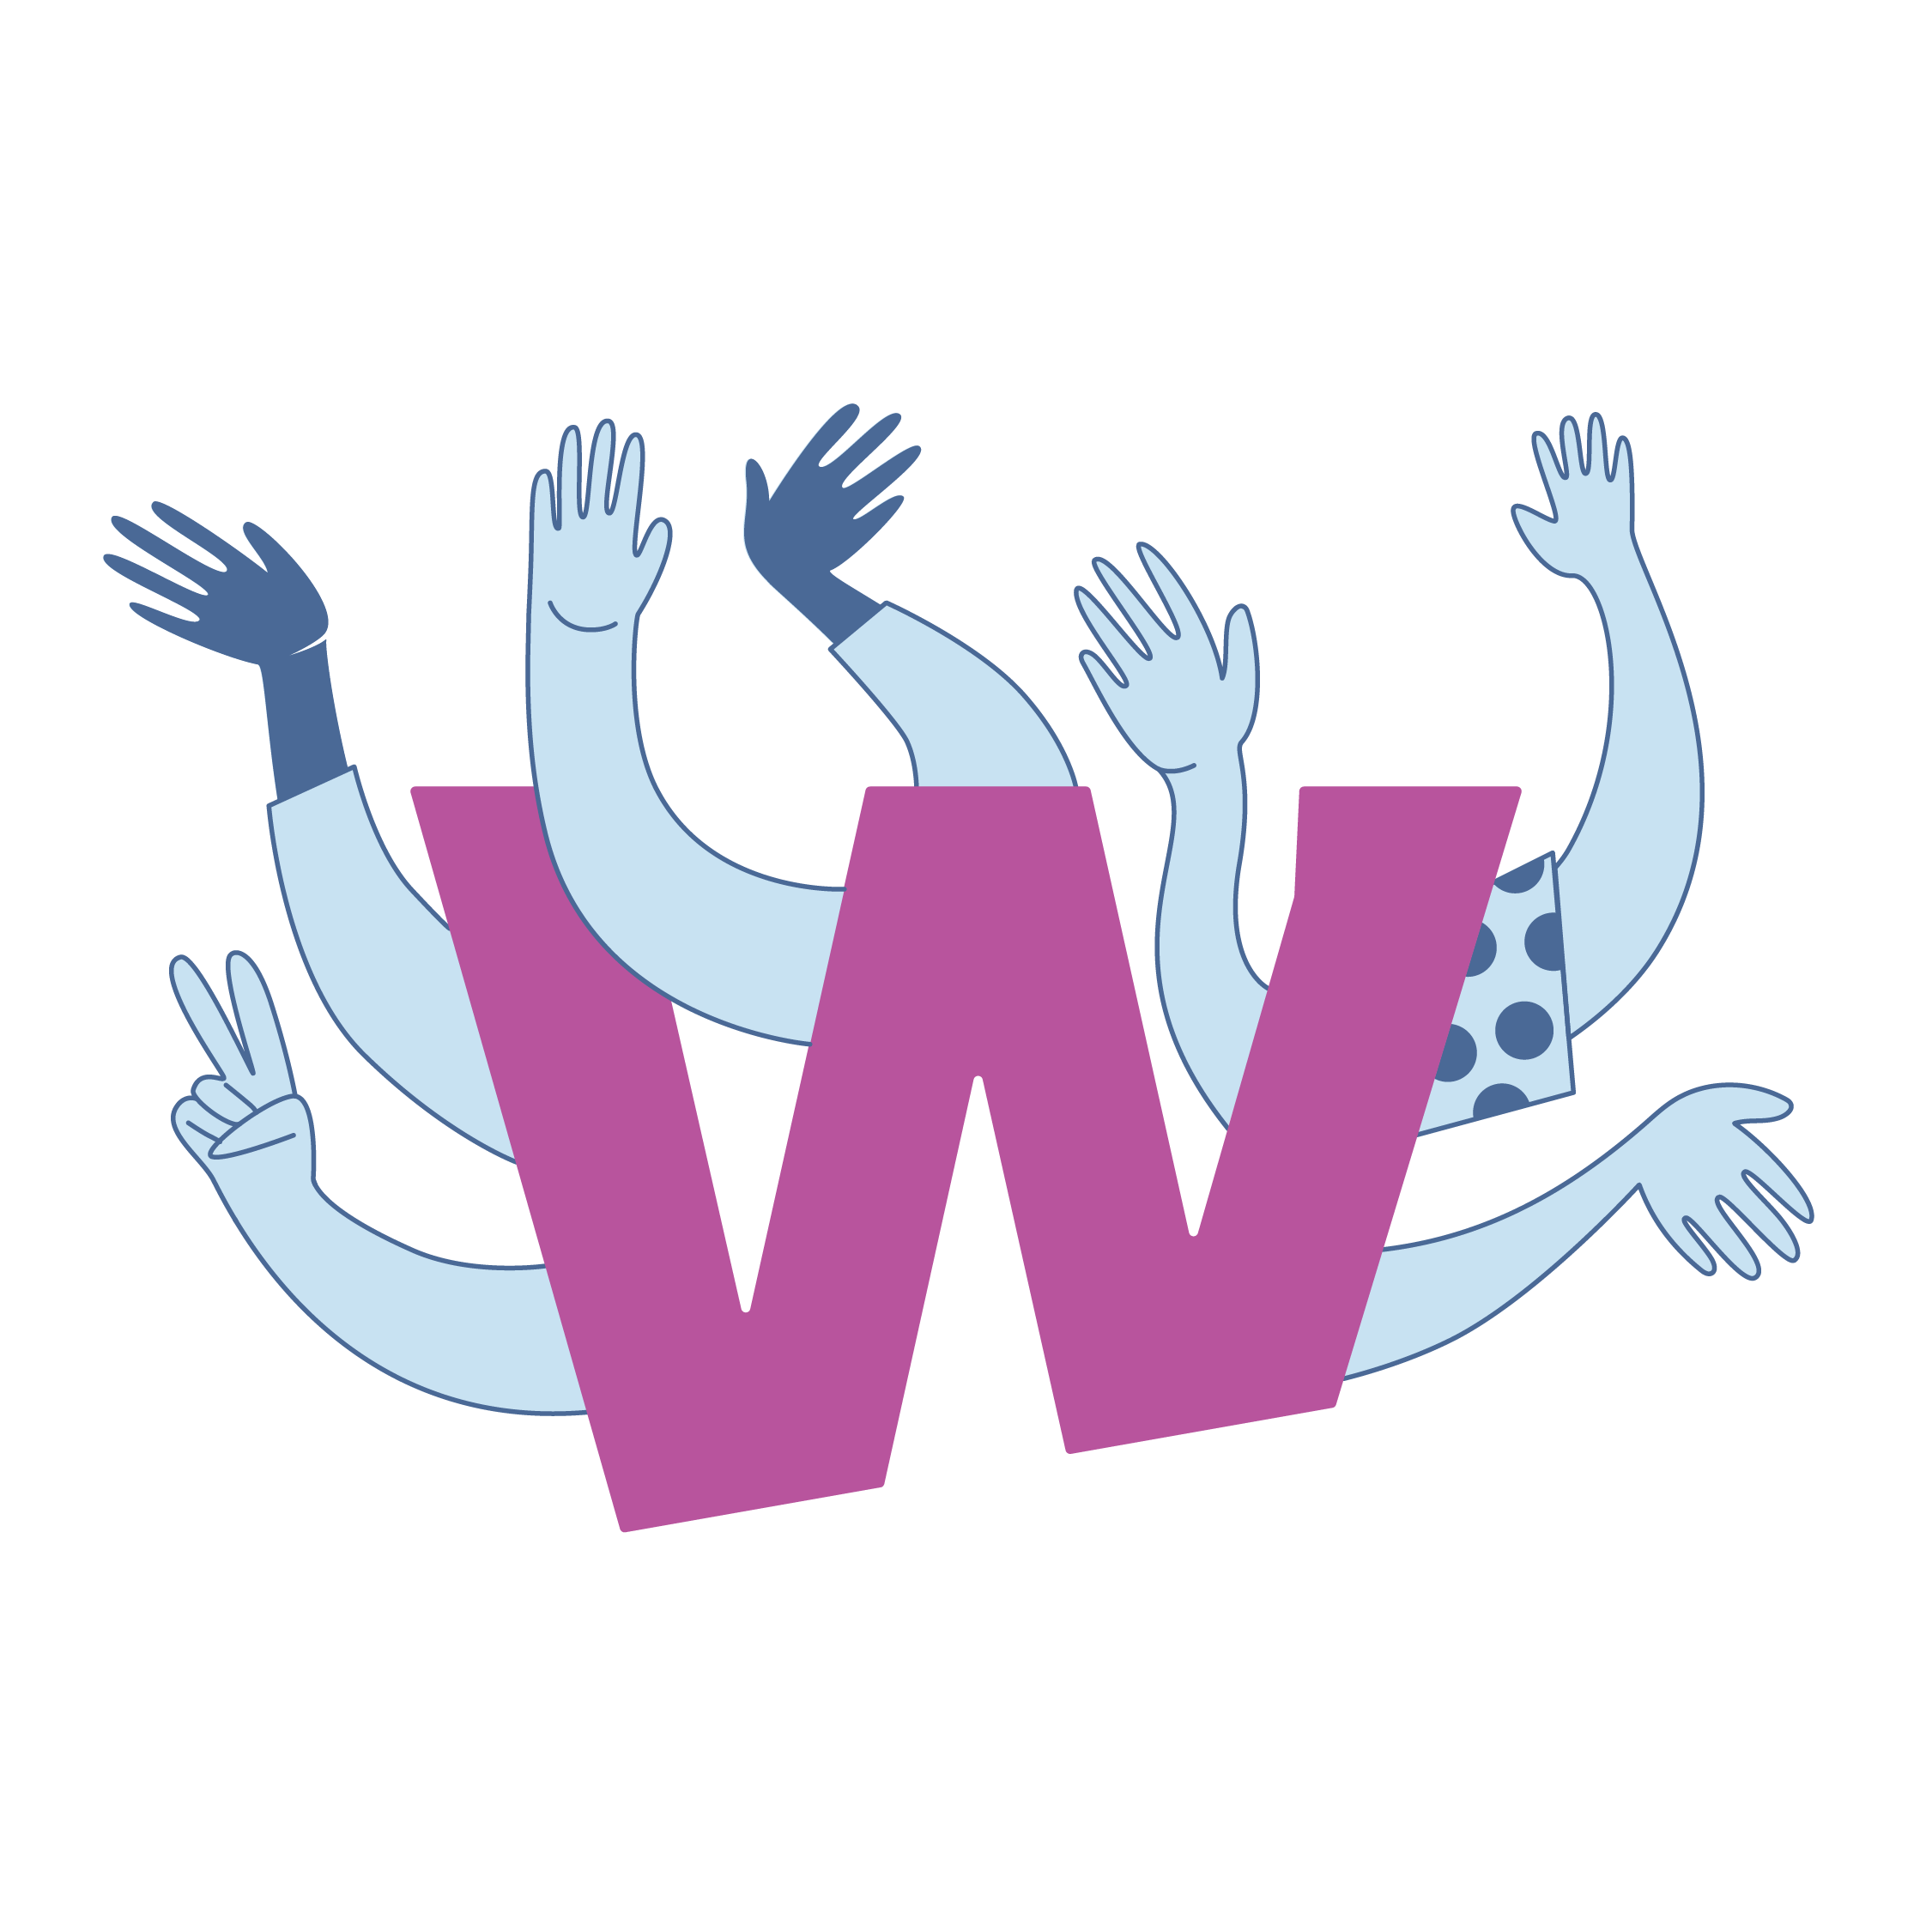 Header Illustration - Wigwam Illustration: Wigwam W in violett mit winkenden Armen und Händen daran und drum herum